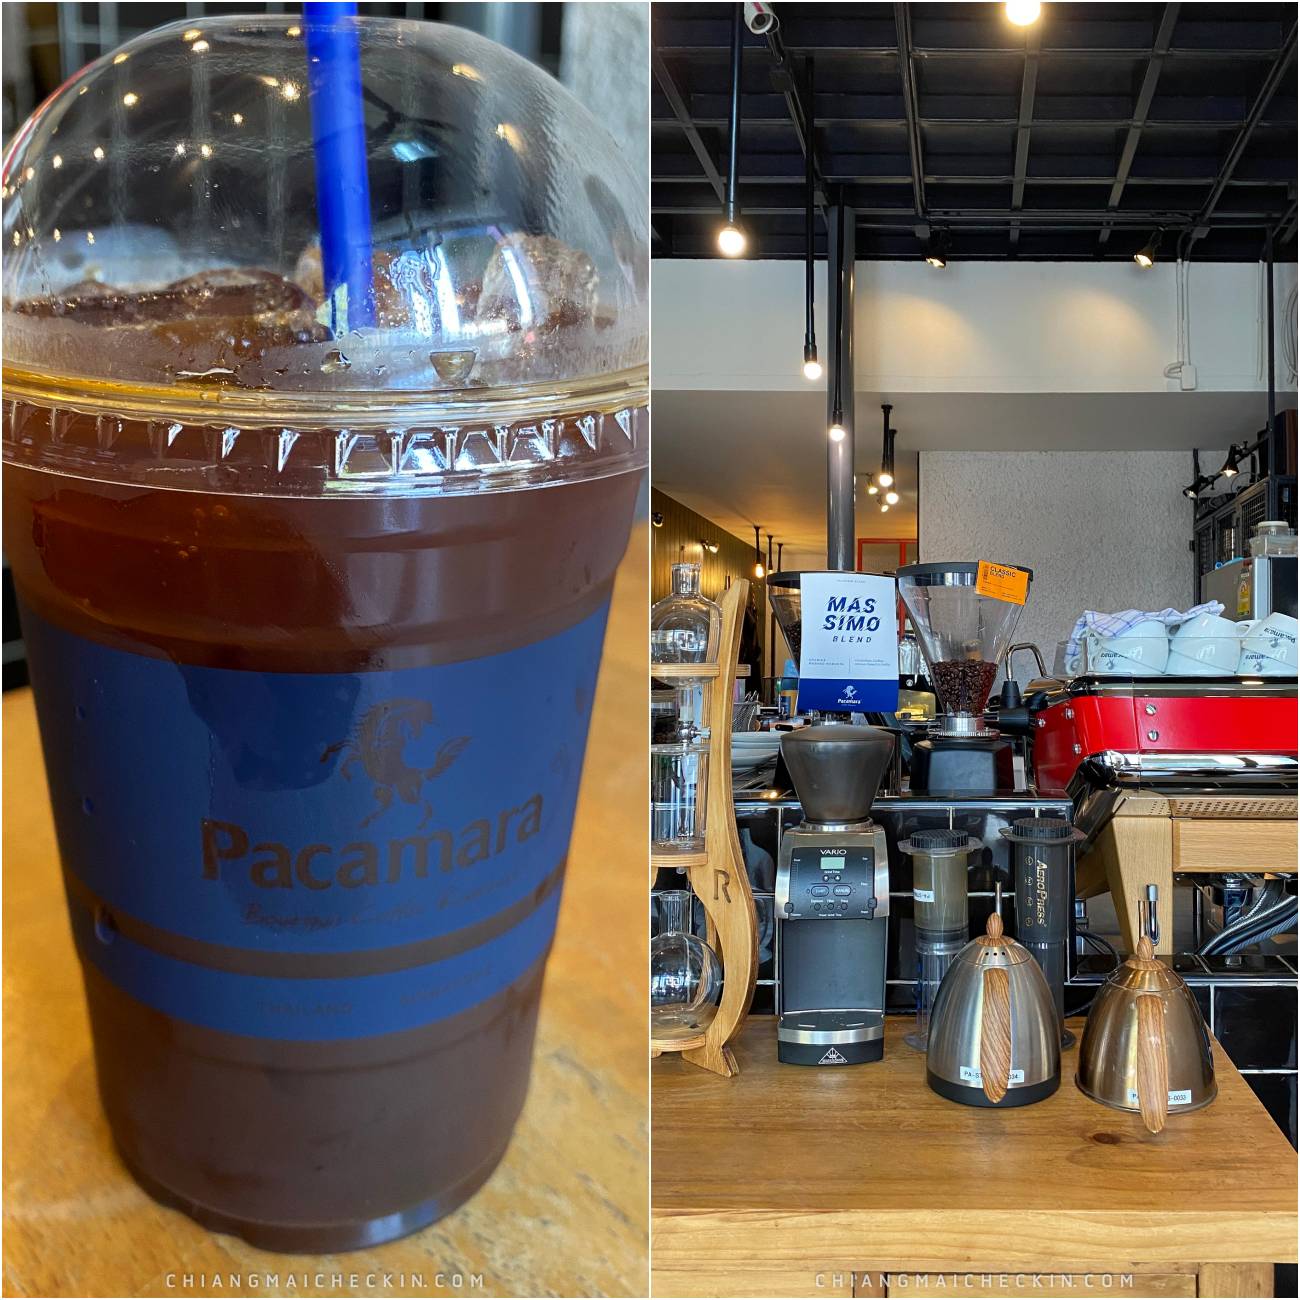 PACAMARA COFFEE ร้านกาแฟเชียงใหม่ สีน้ำเงิน มีสไตล์กาแฟดียยย์ เปิดประตูแล้วหอมกาแฟสุดๆ